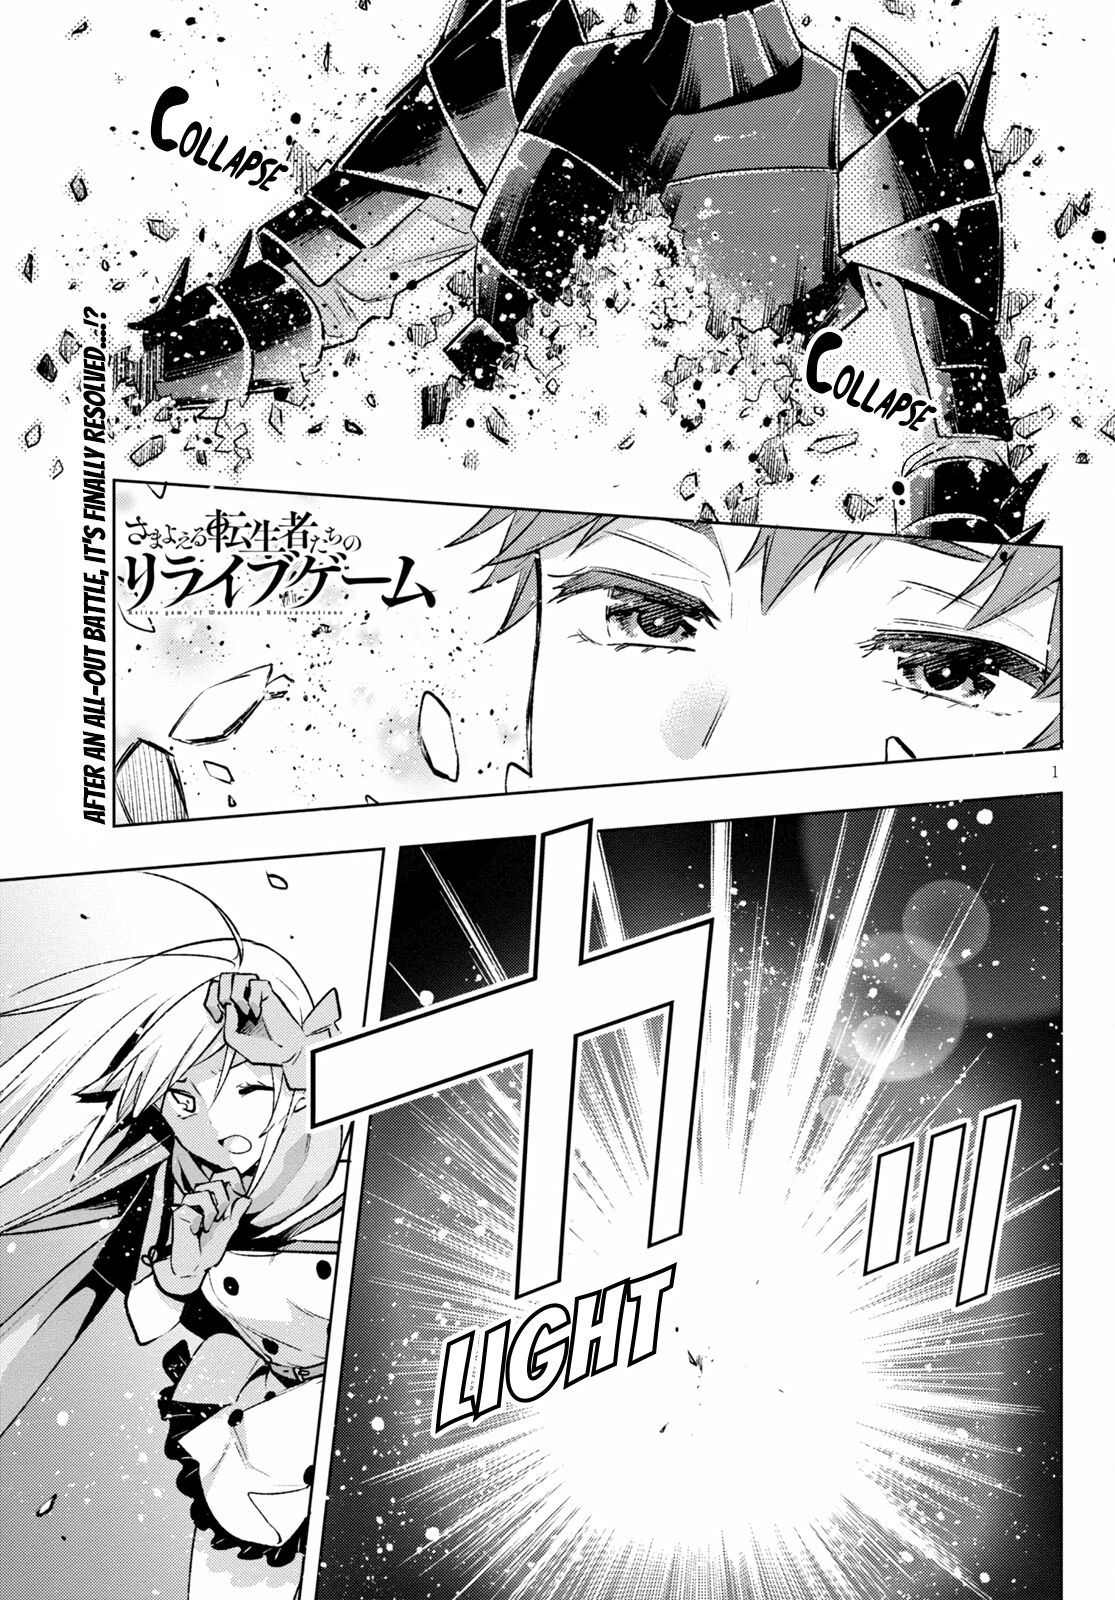 Samayoeru Tensei-Sha-Tachi No Relive Game - Page 1